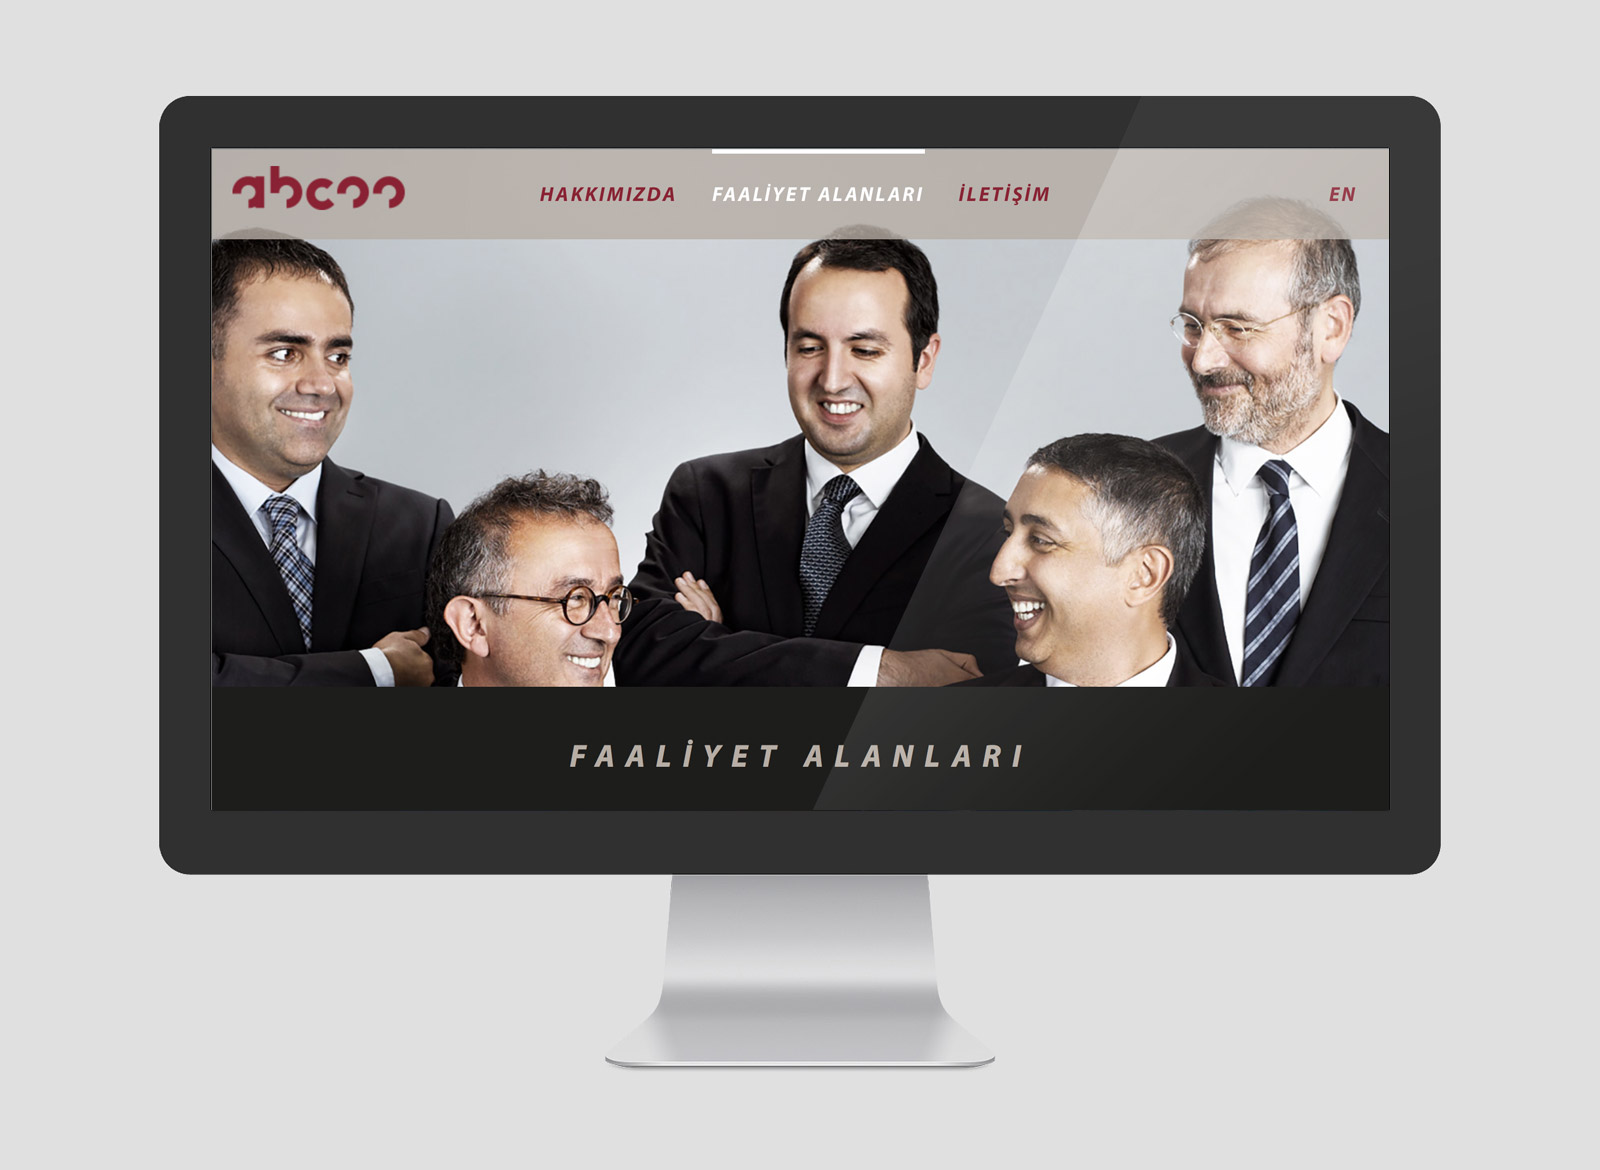 abcoo avukatlık bürosu, Niffob, reklam ajansı, dijital ajans, Gürkan Bayındır, Web Design<br>Development<br>...